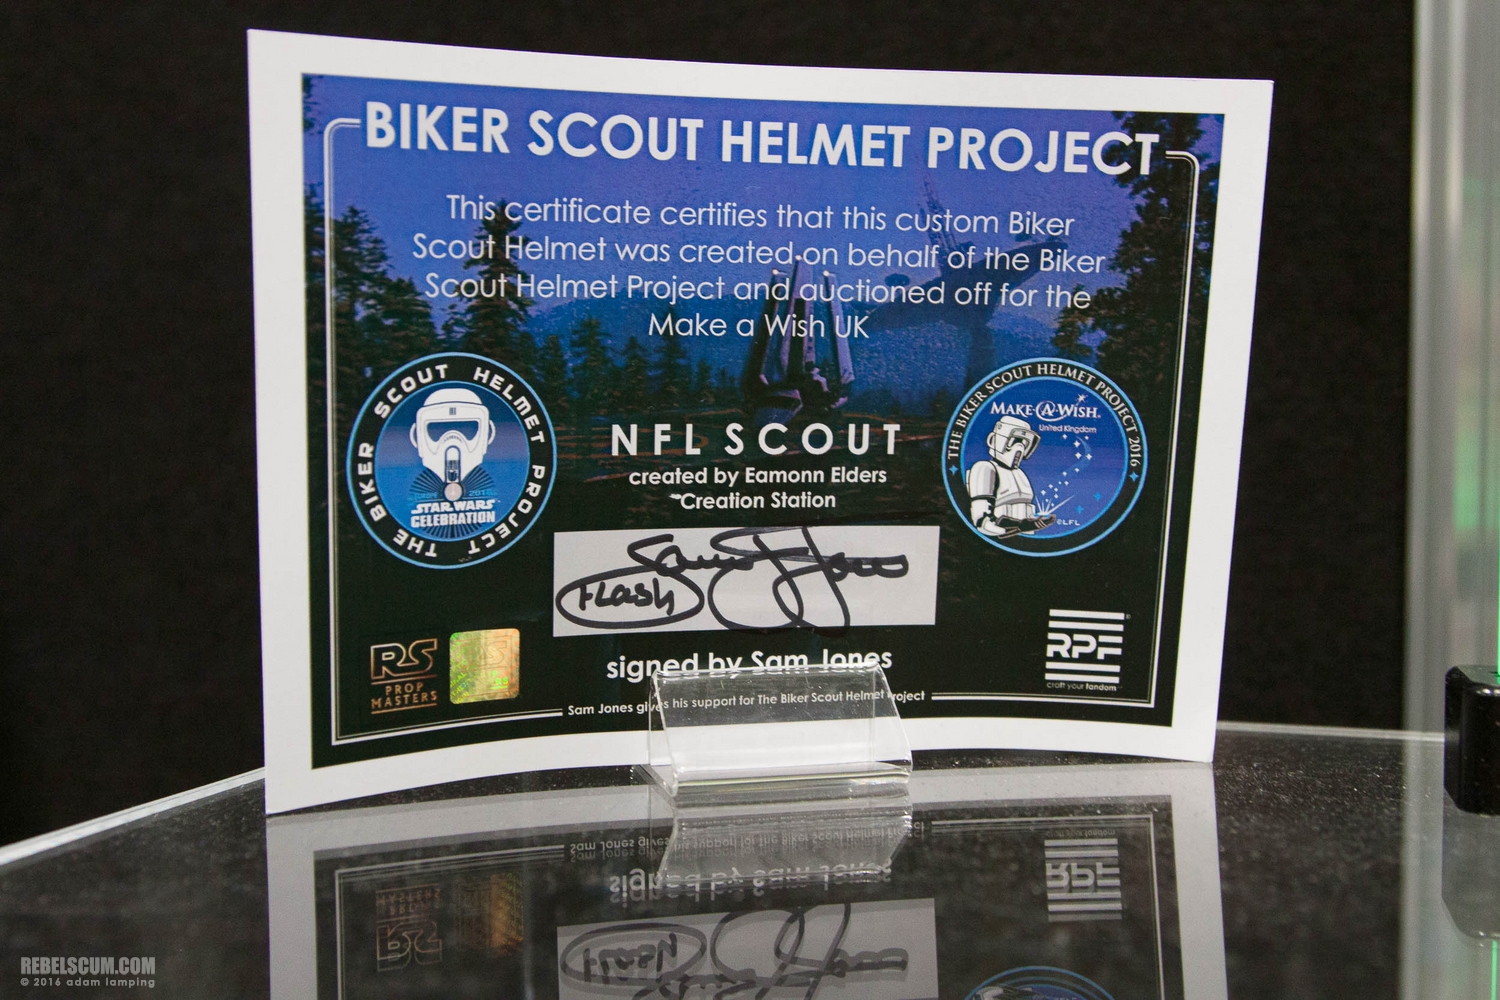 star-wars-celebration-2016-biker-scout-helmet-project-066.jpg